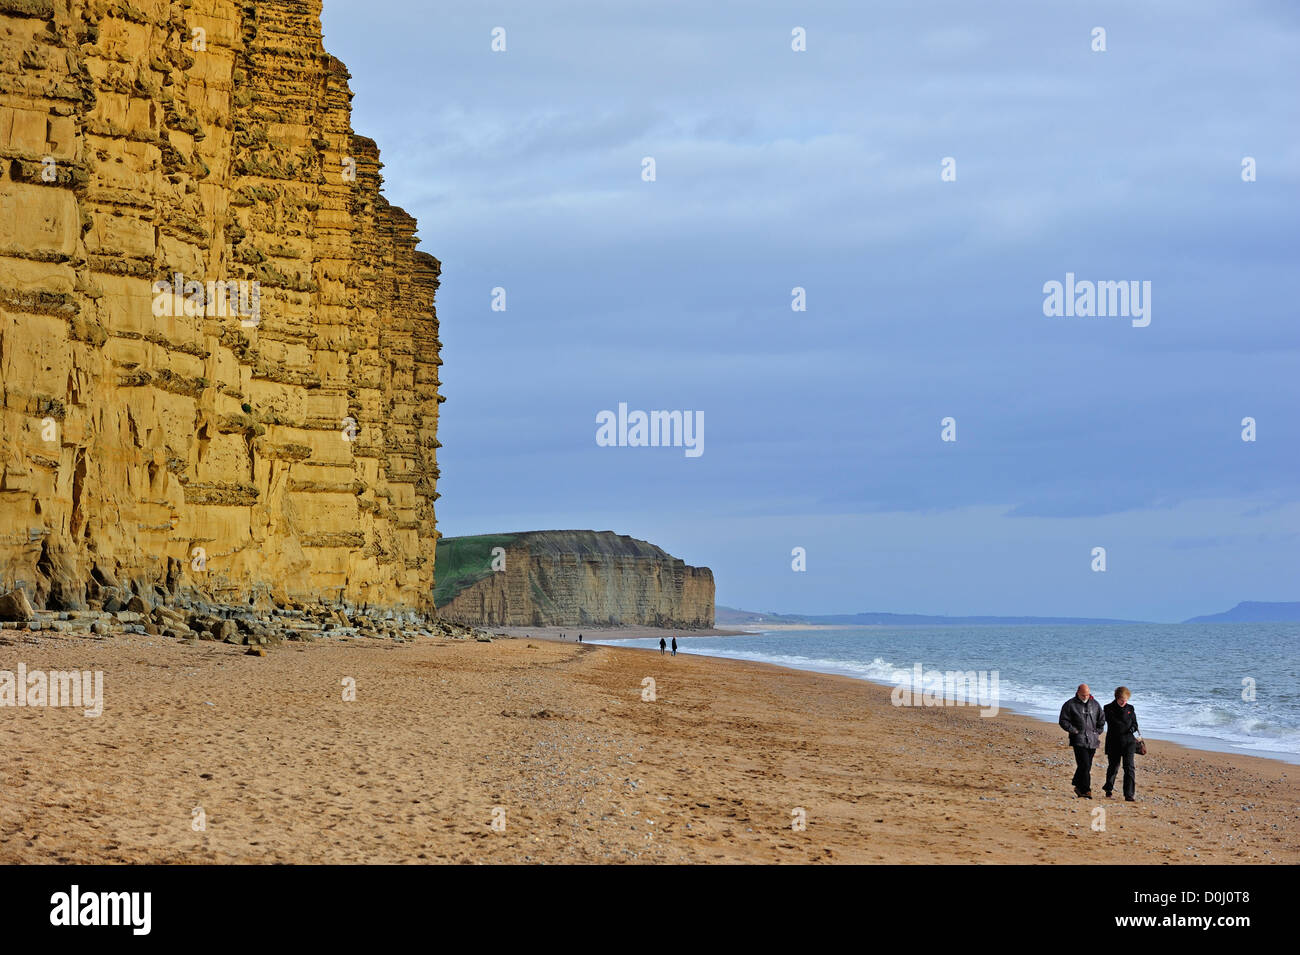 Les marcheurs walking on beach at East Cliff, faite de grès, près de West Bay, le long de la Côte Jurassique, Dorset, dans le sud de l'Angleterre, Royaume-Uni Banque D'Images